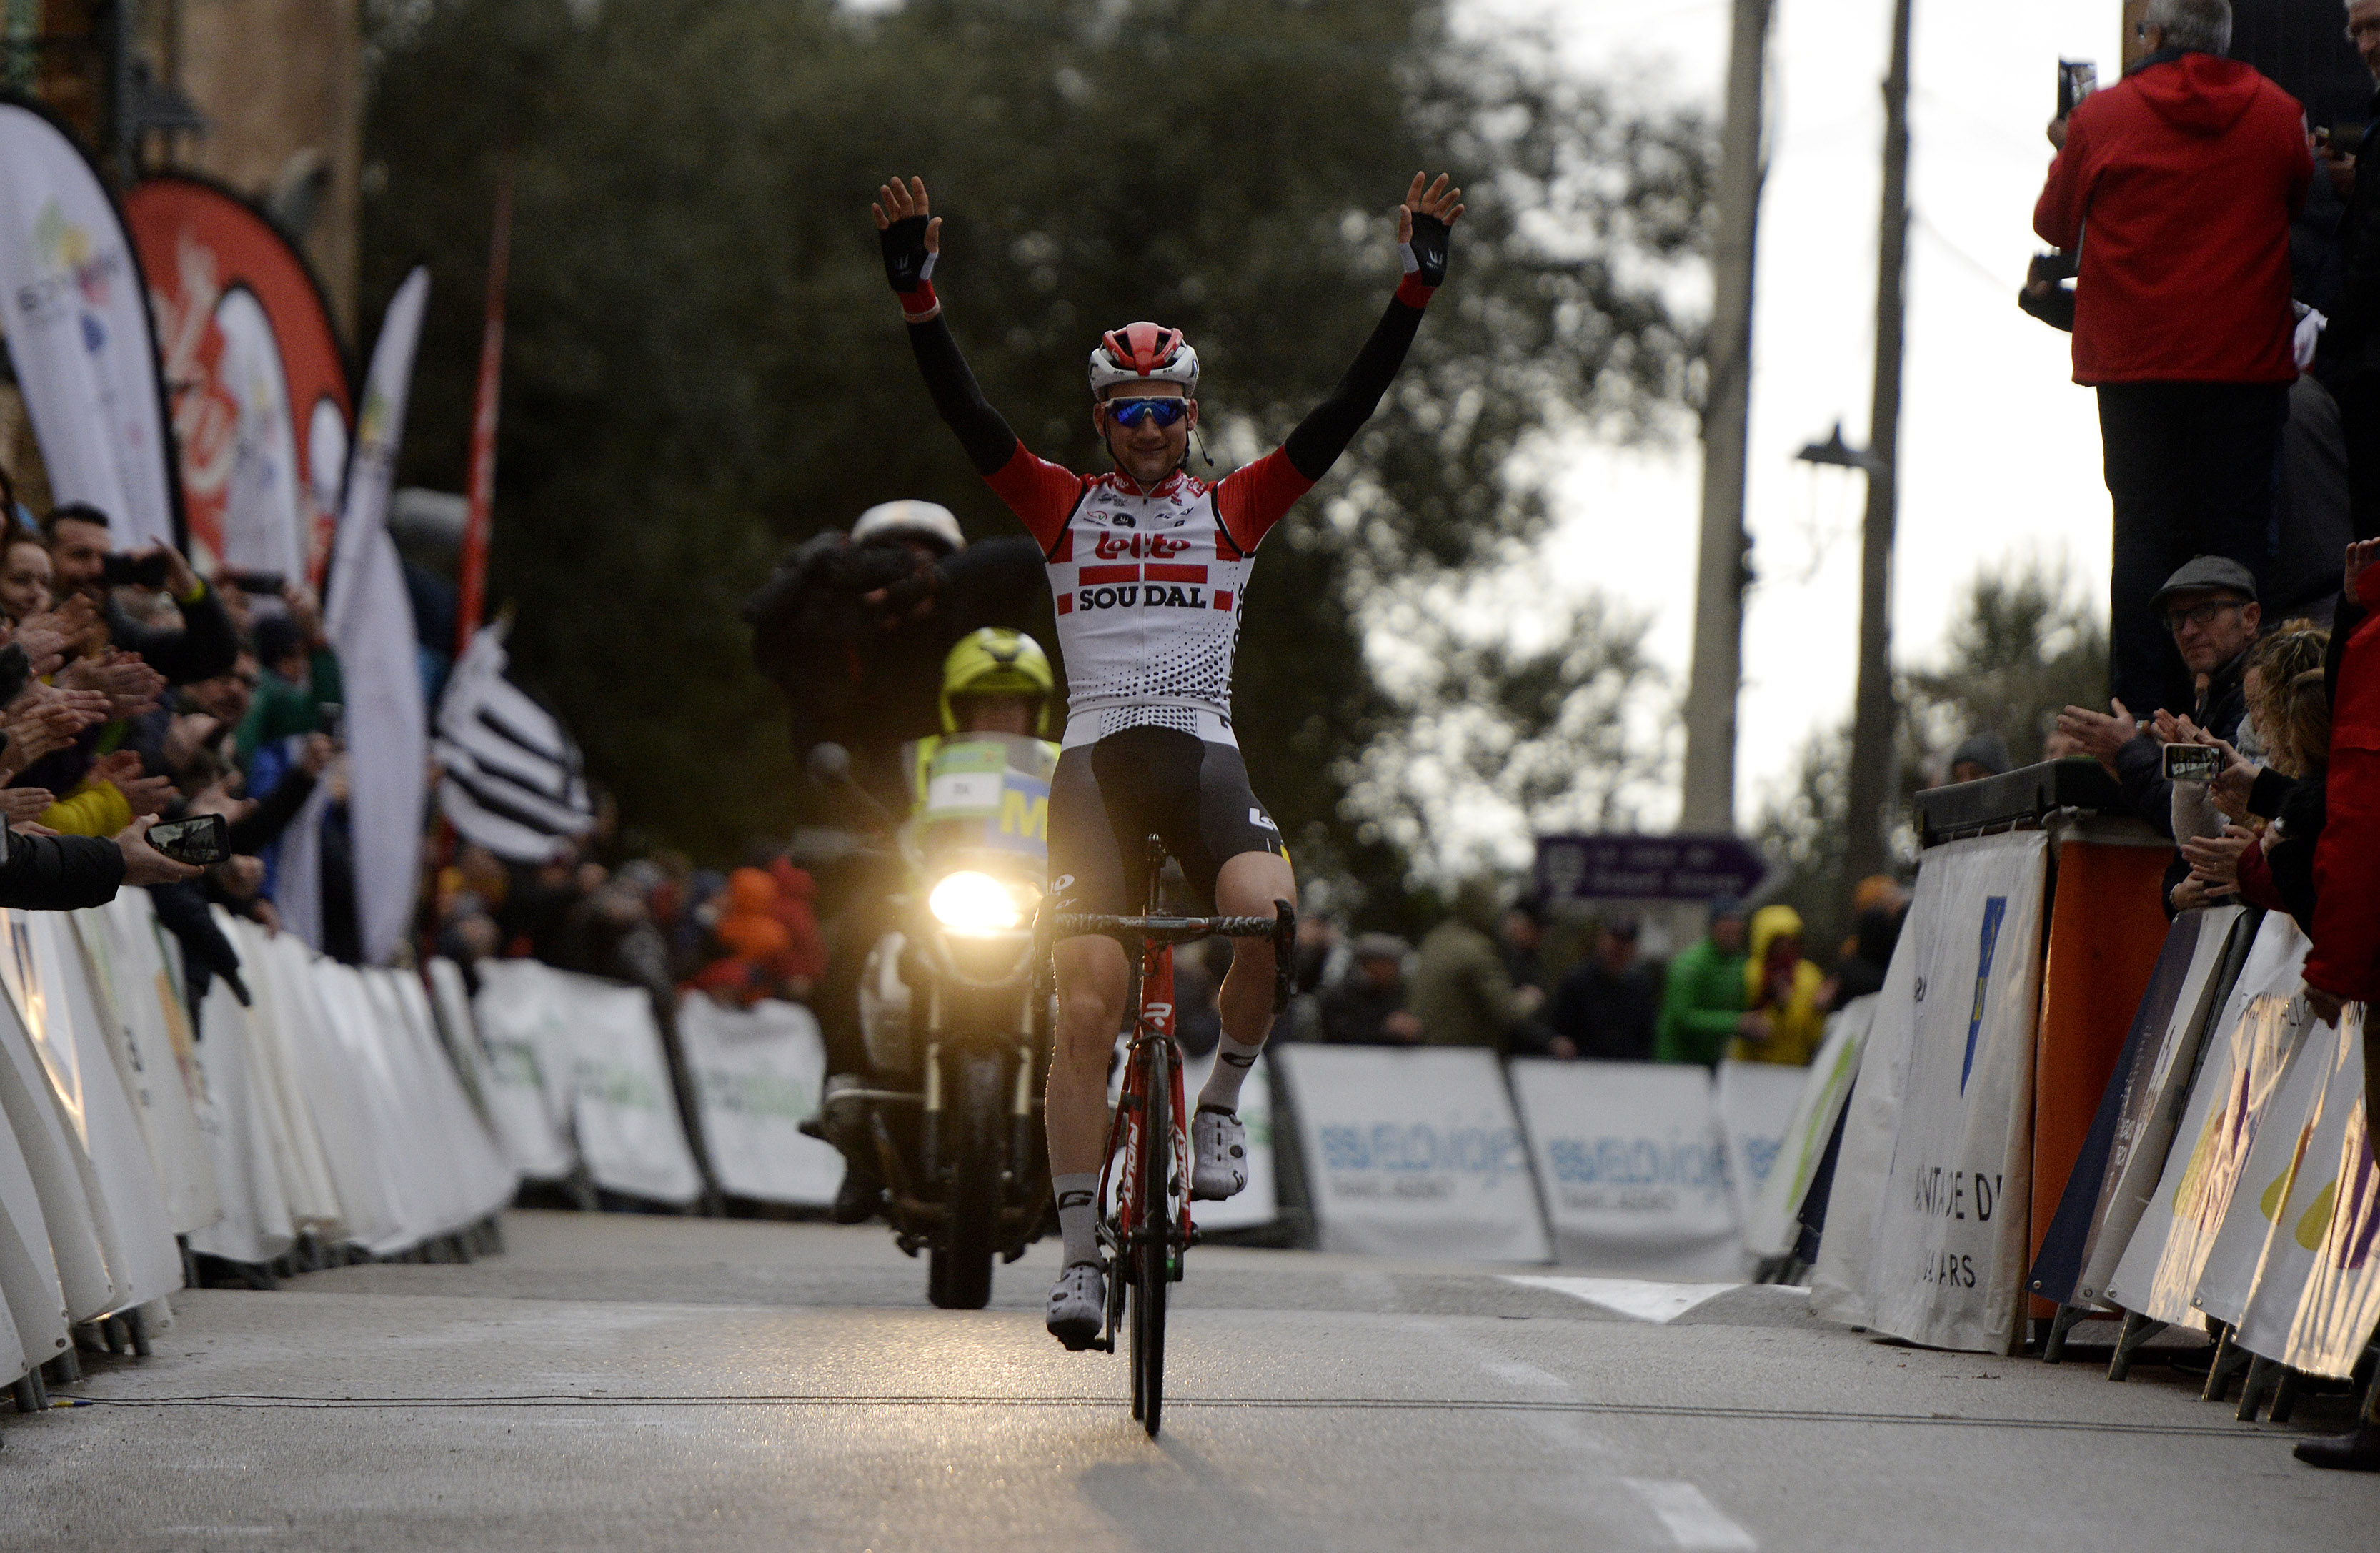 Cinco nuevos equipos inscritos en la XXIX Playa de Palma Challenge Ciclista Mallorca